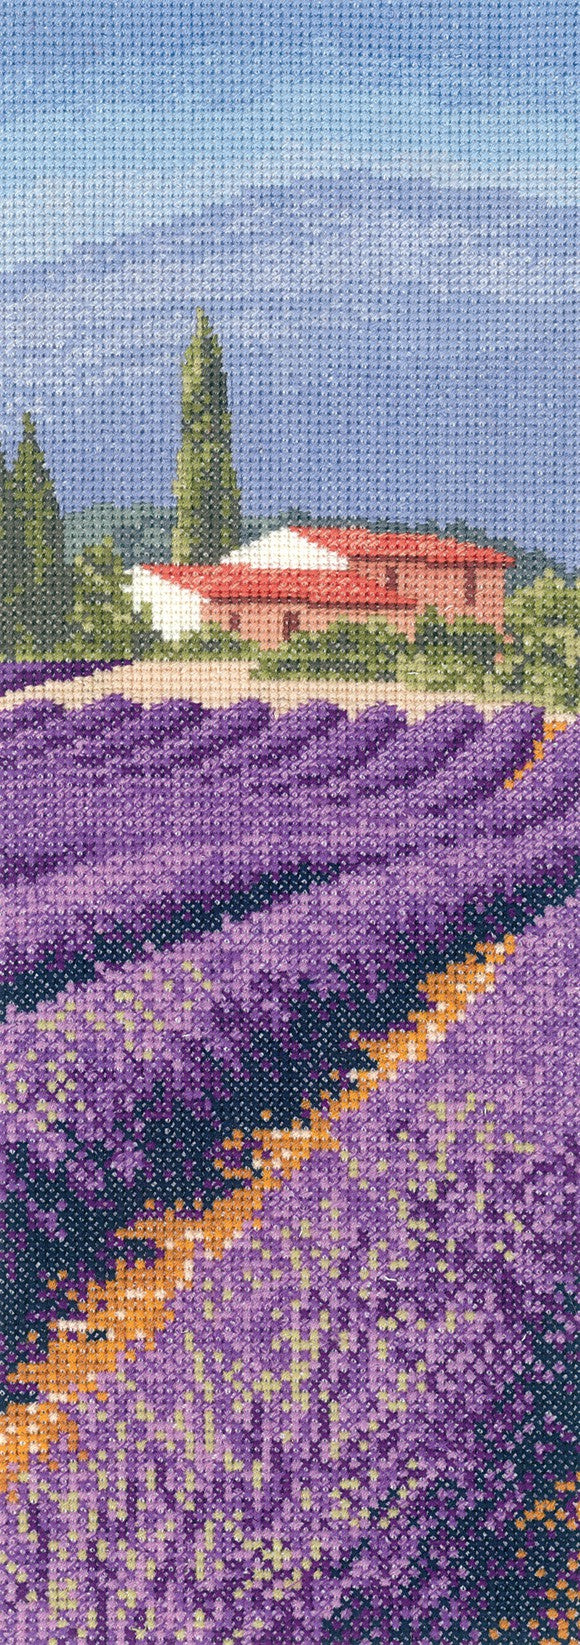 Lavender Fields Cross Stitch Kit by Heritage Crafts